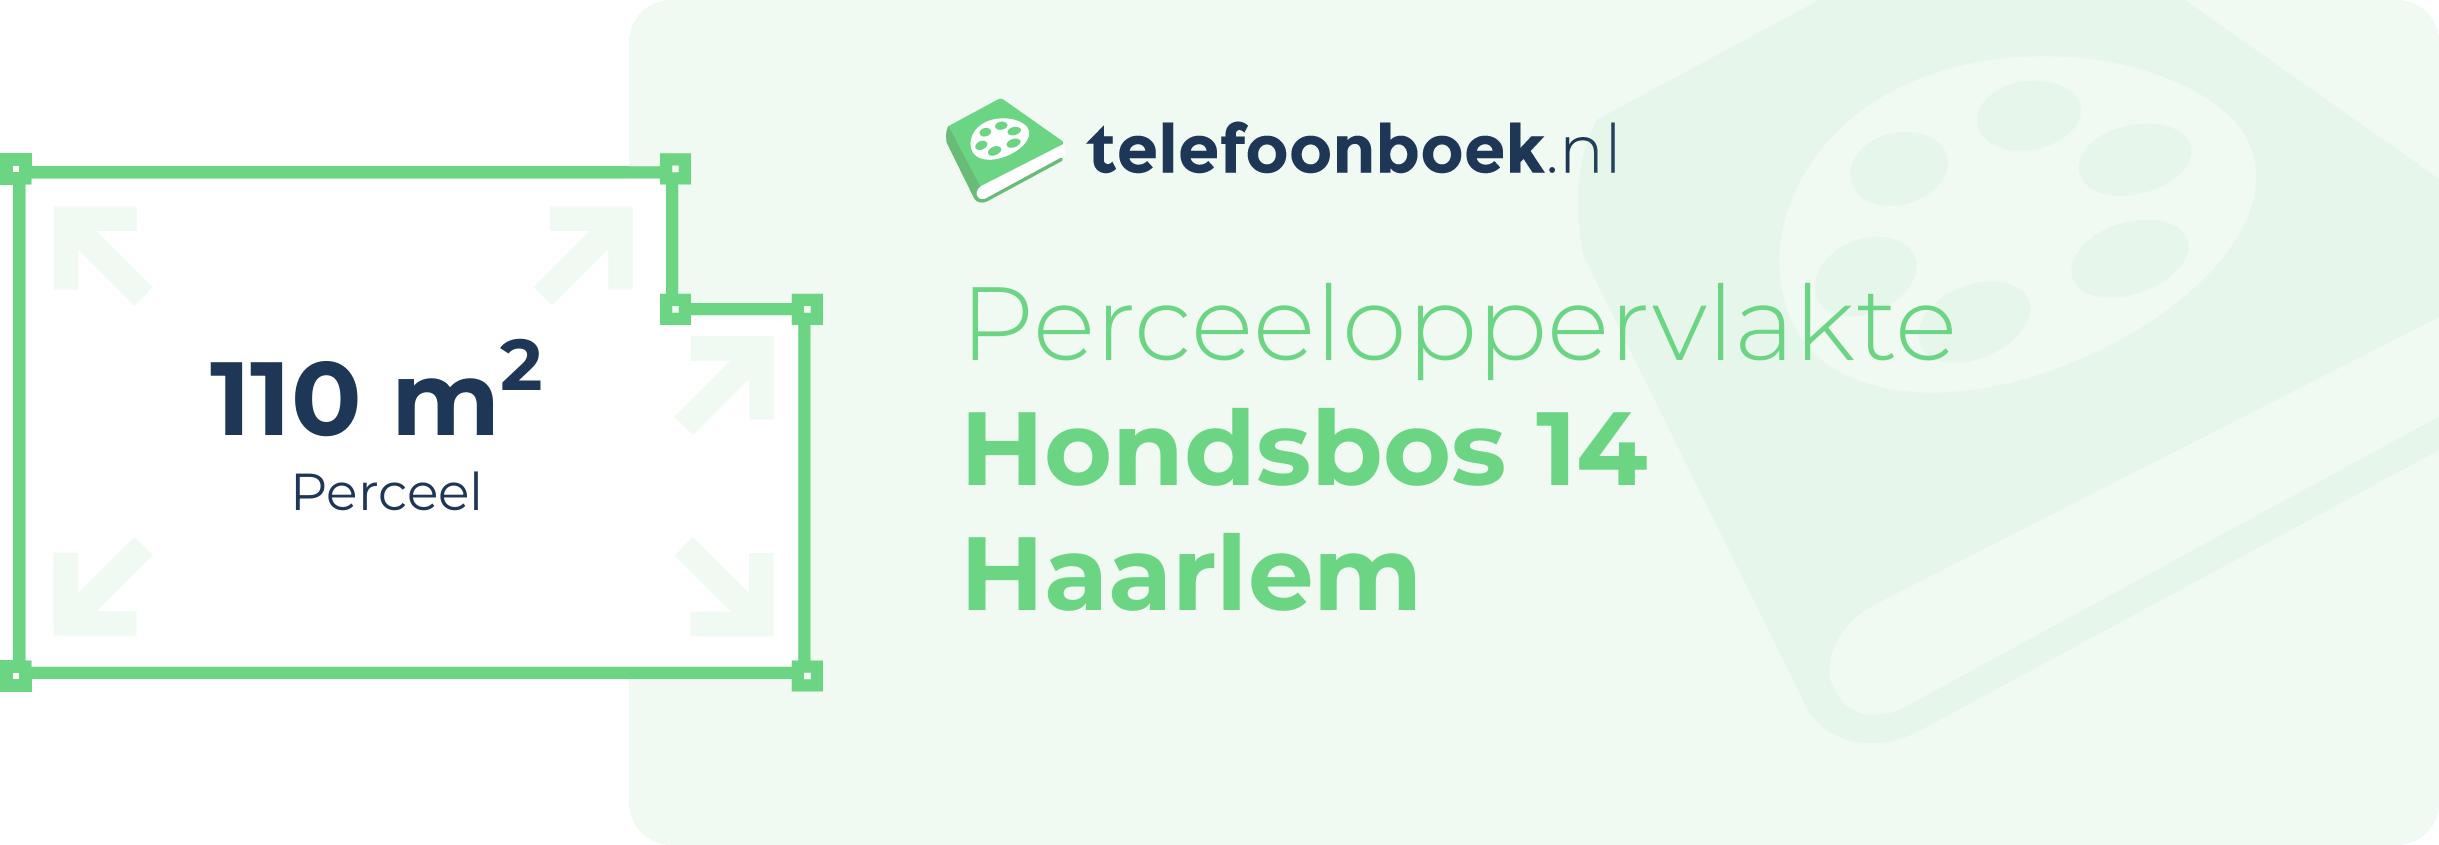 Perceeloppervlakte Hondsbos 14 Haarlem